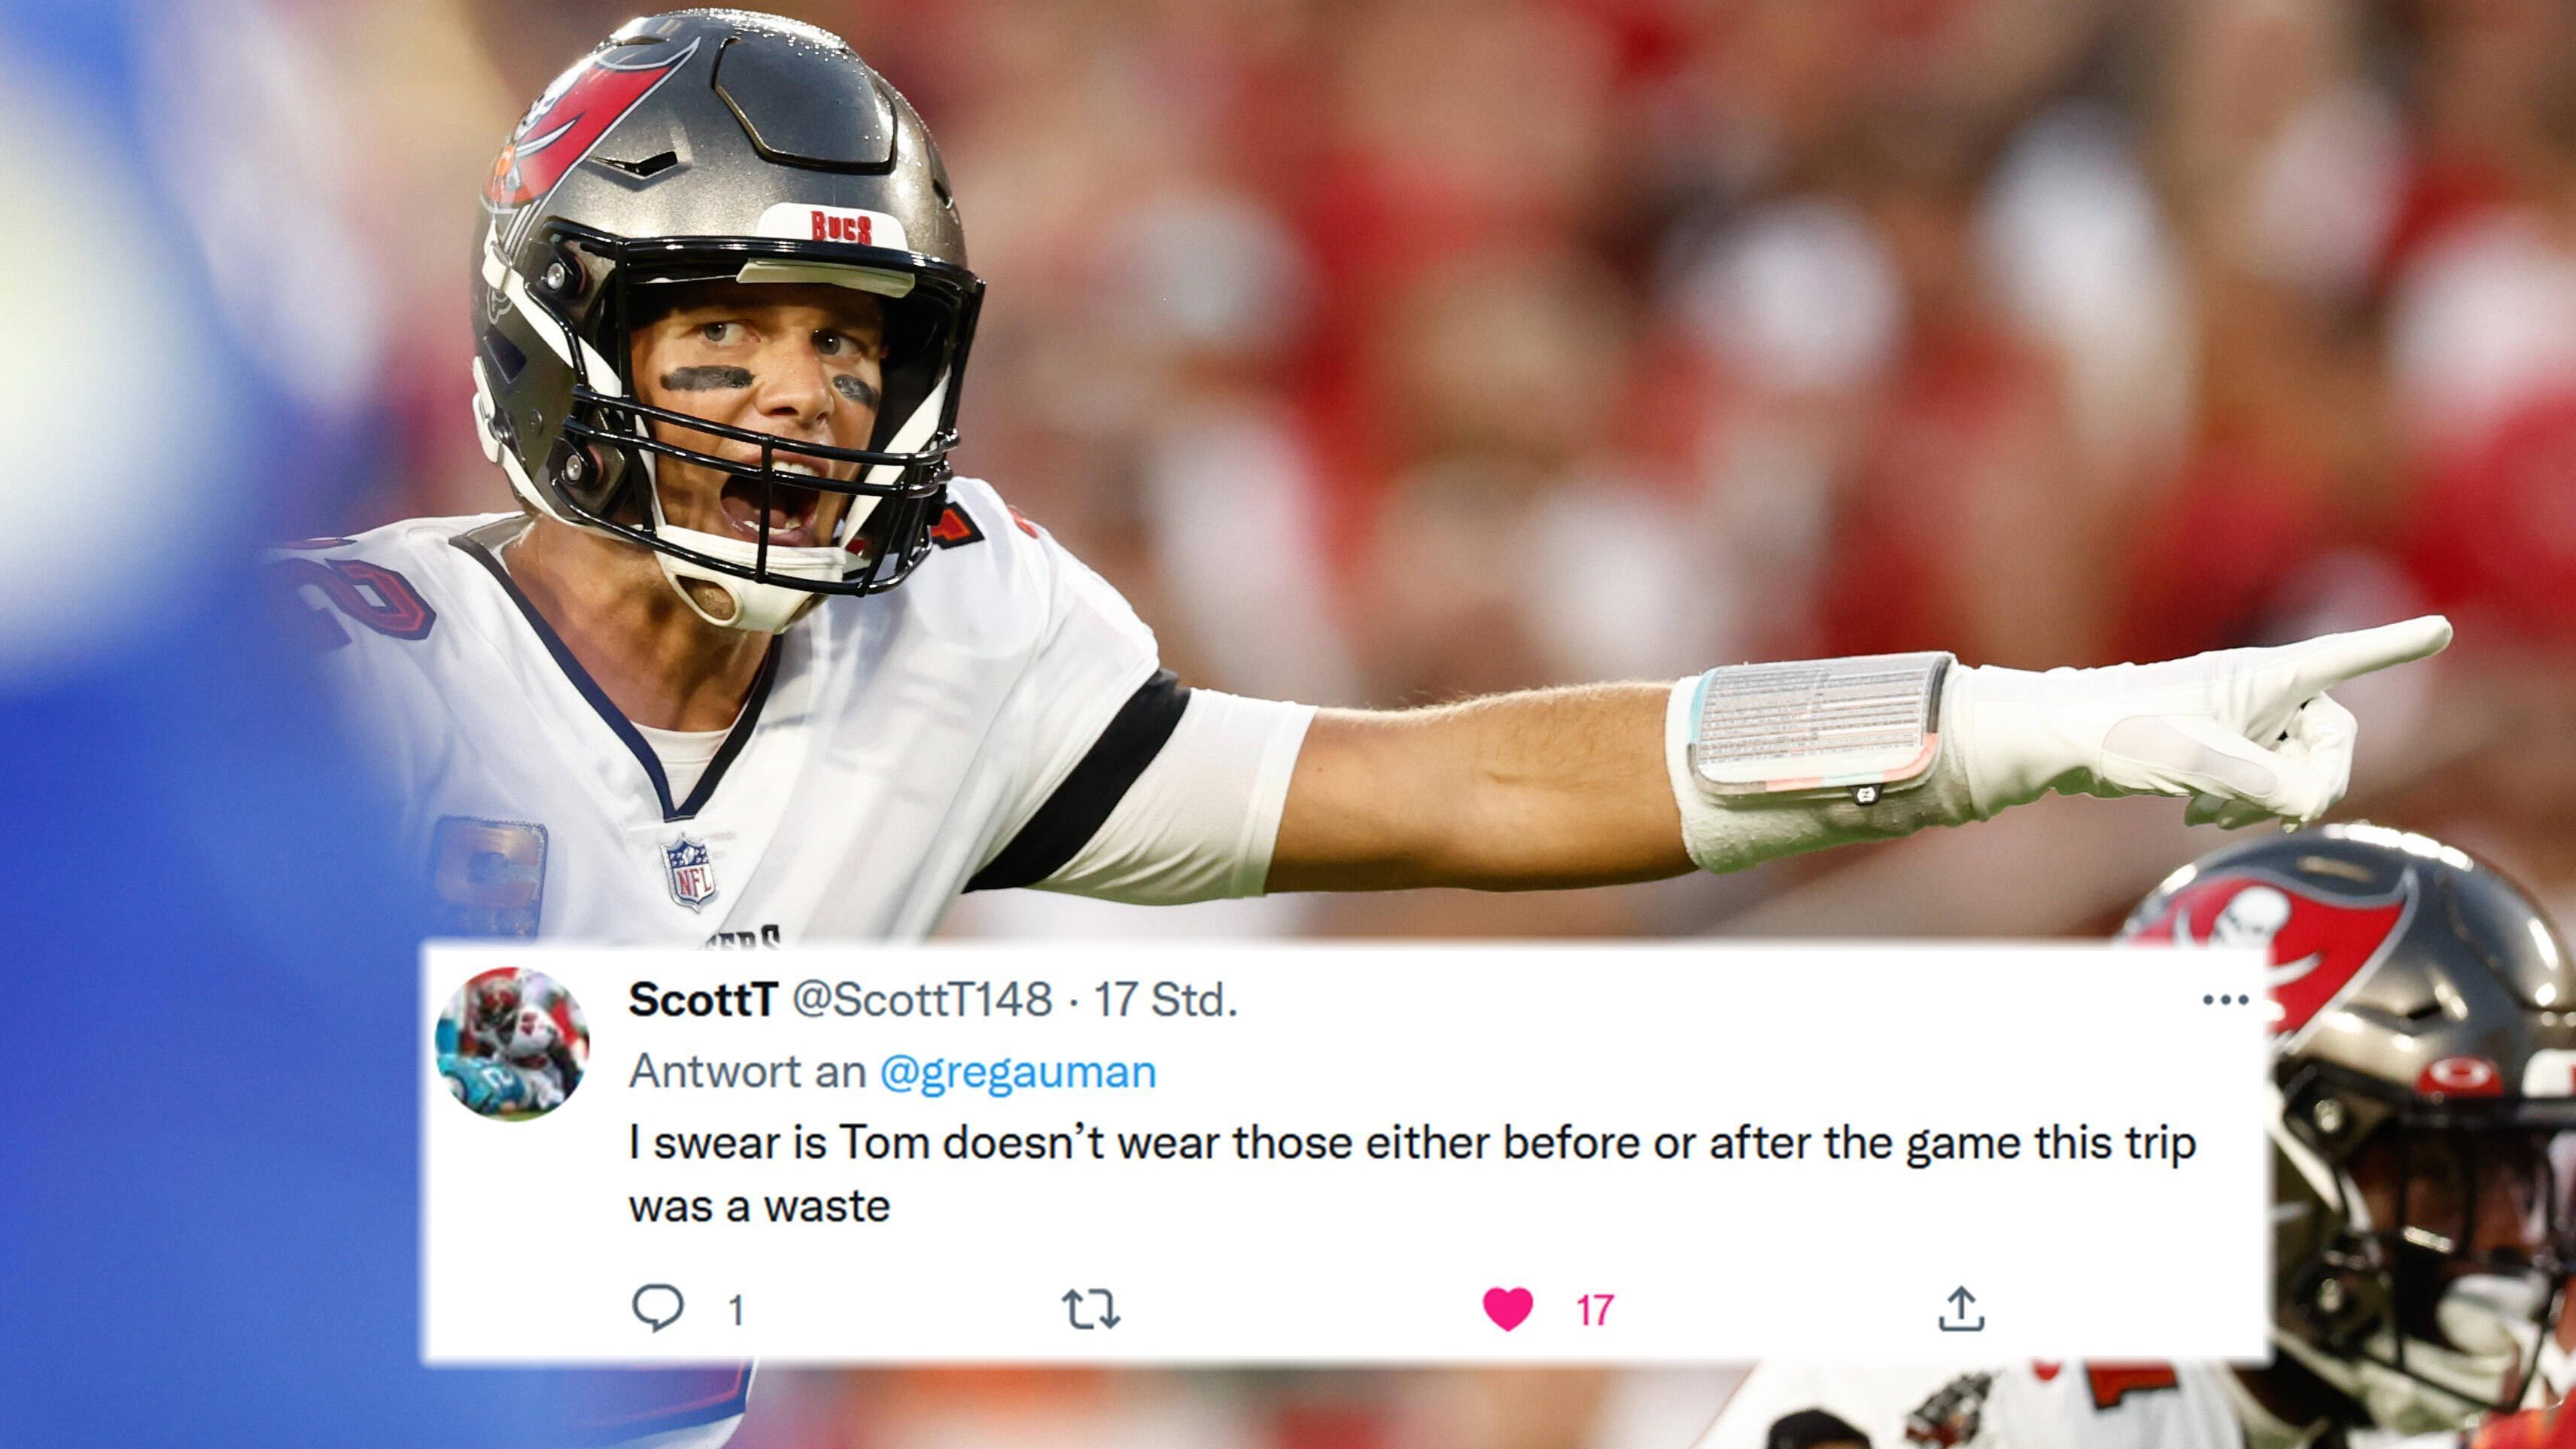 
                <strong>Deutschland-Trip umsonst?</strong><br>
                "Ich schwöre es euch, wenn Tom die Lederhose weder vor, noch nach dem Spiel trägt, war dieser gesamte Trip eine einzige Verschwendung", behauptete Scott auf Twitter.
              